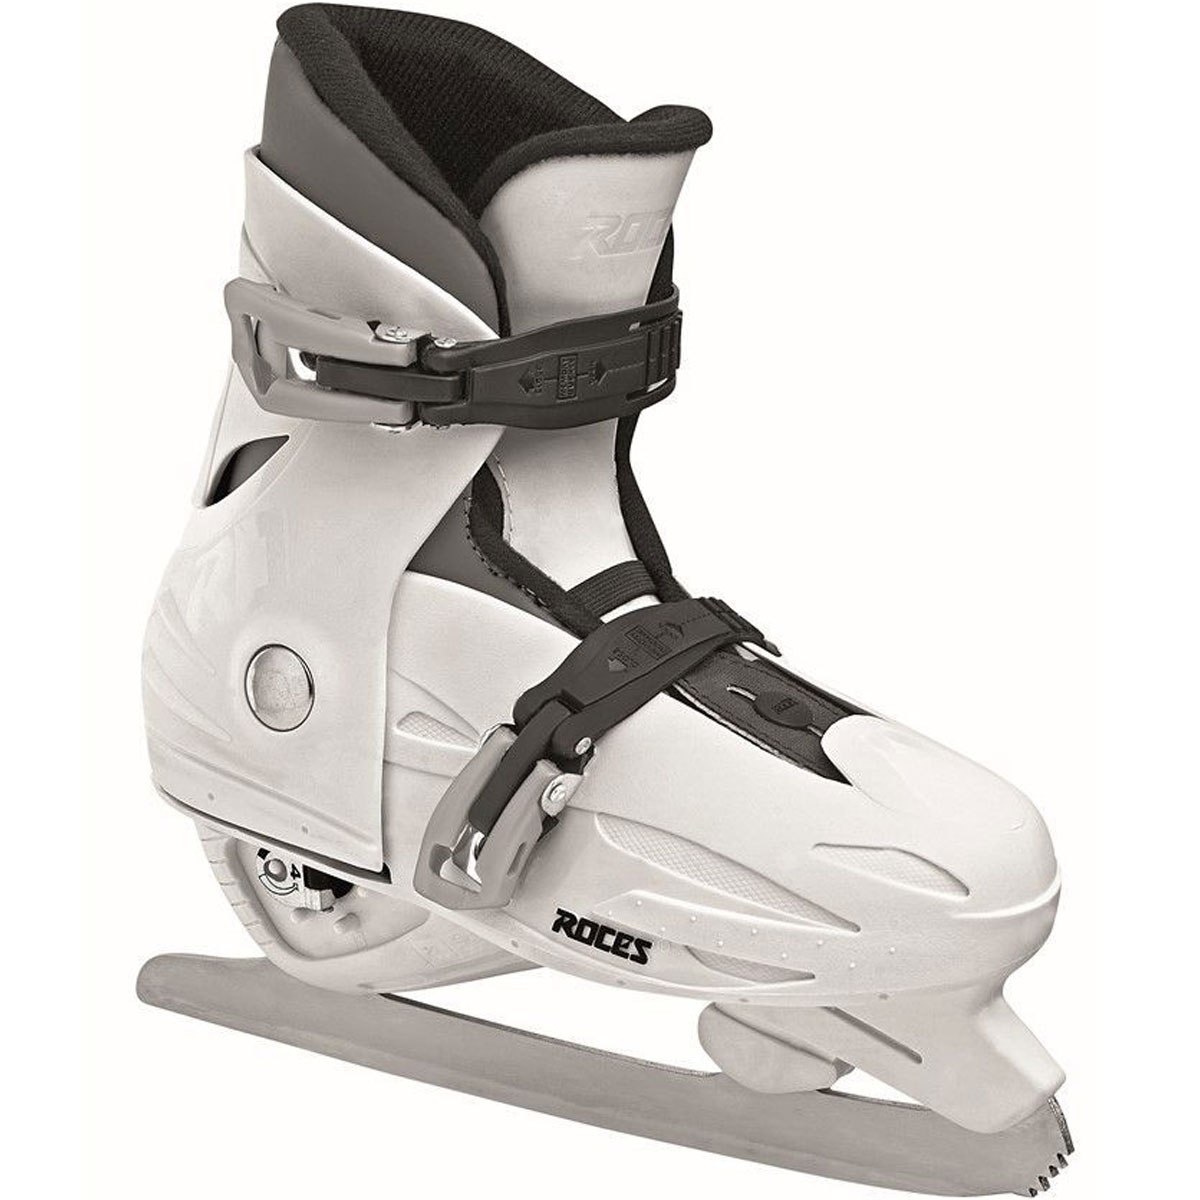 Roces Kids Adjustable Ice Skate MCK II Figure 450519-00002 - image 1 of 5